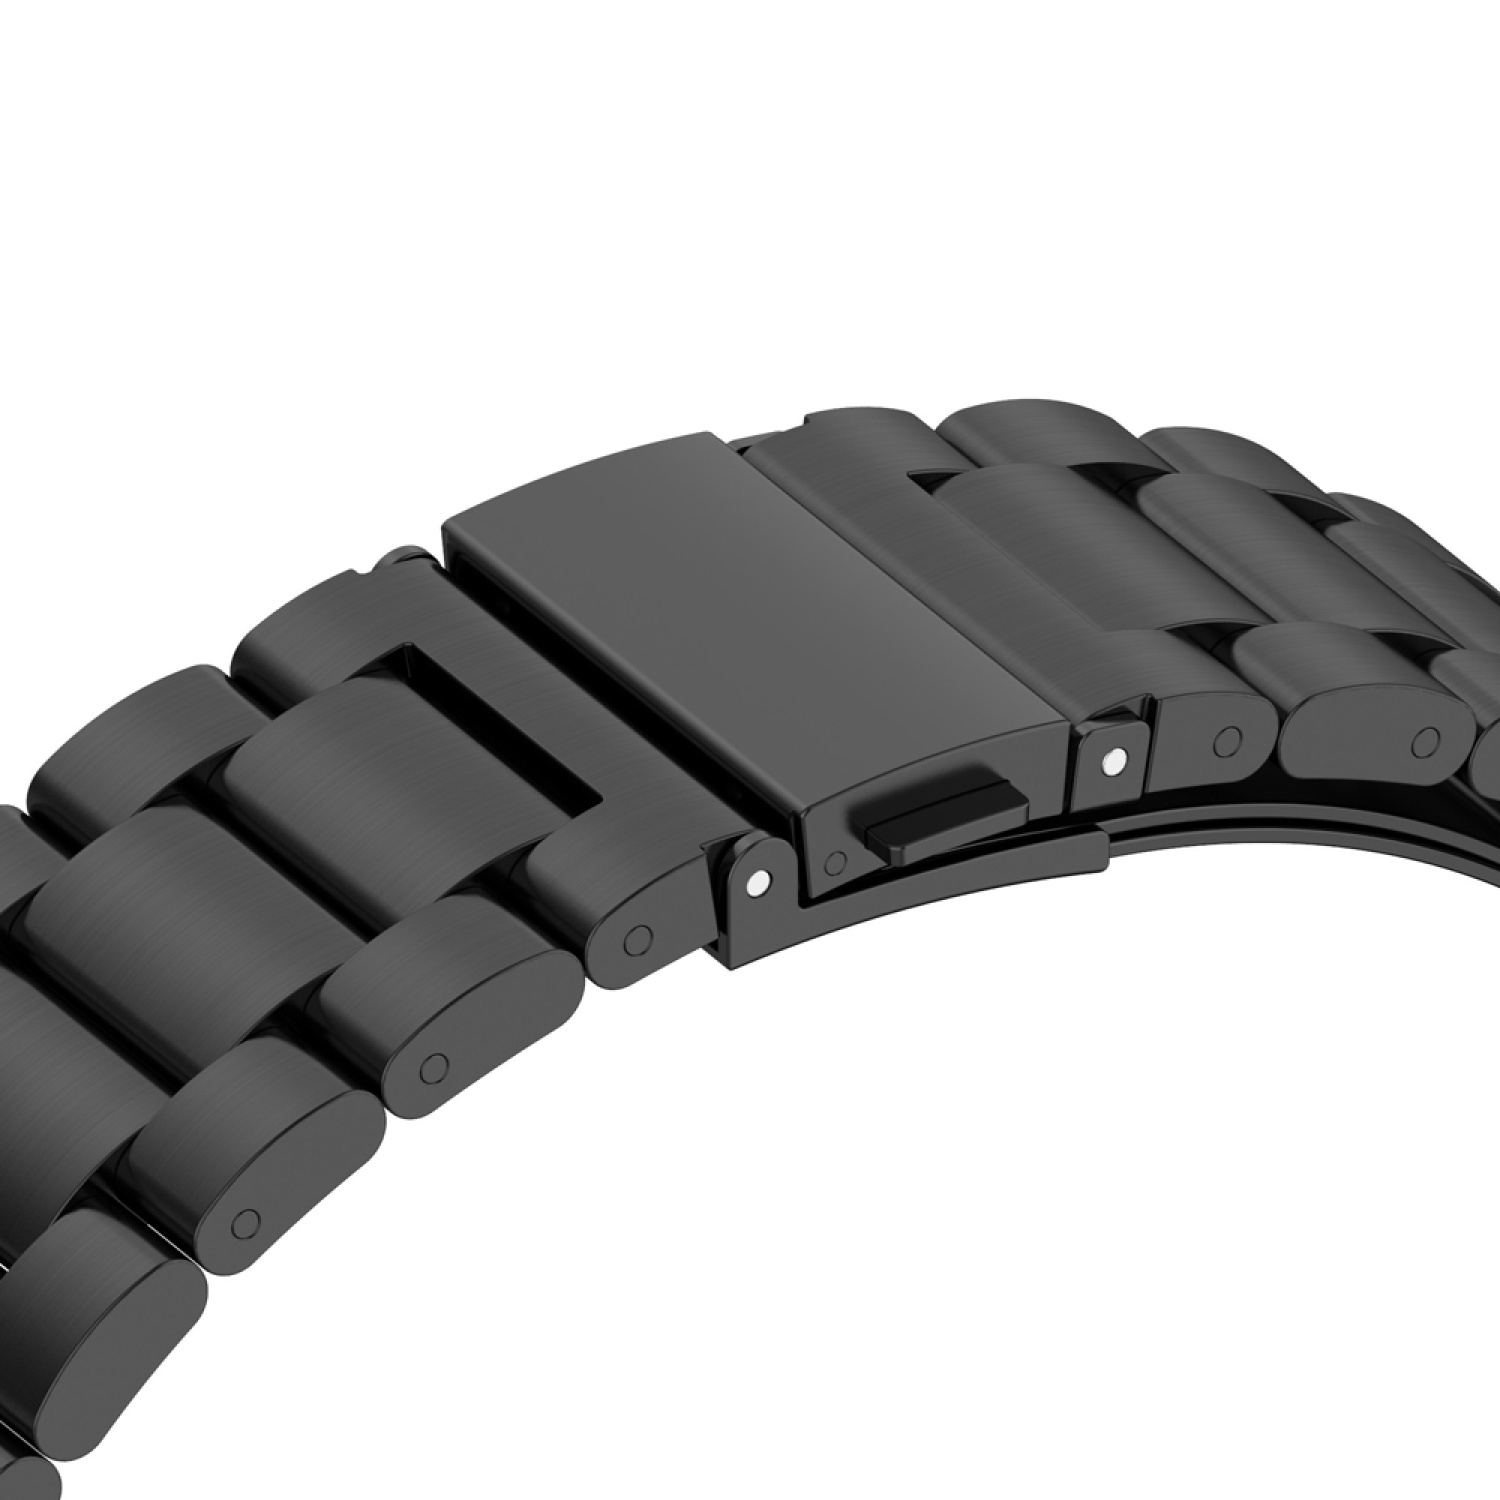 GT Watch DESIGN 42mm, KÖNIG Ersatzband, 3 Silber Sportarmband, Huawei,